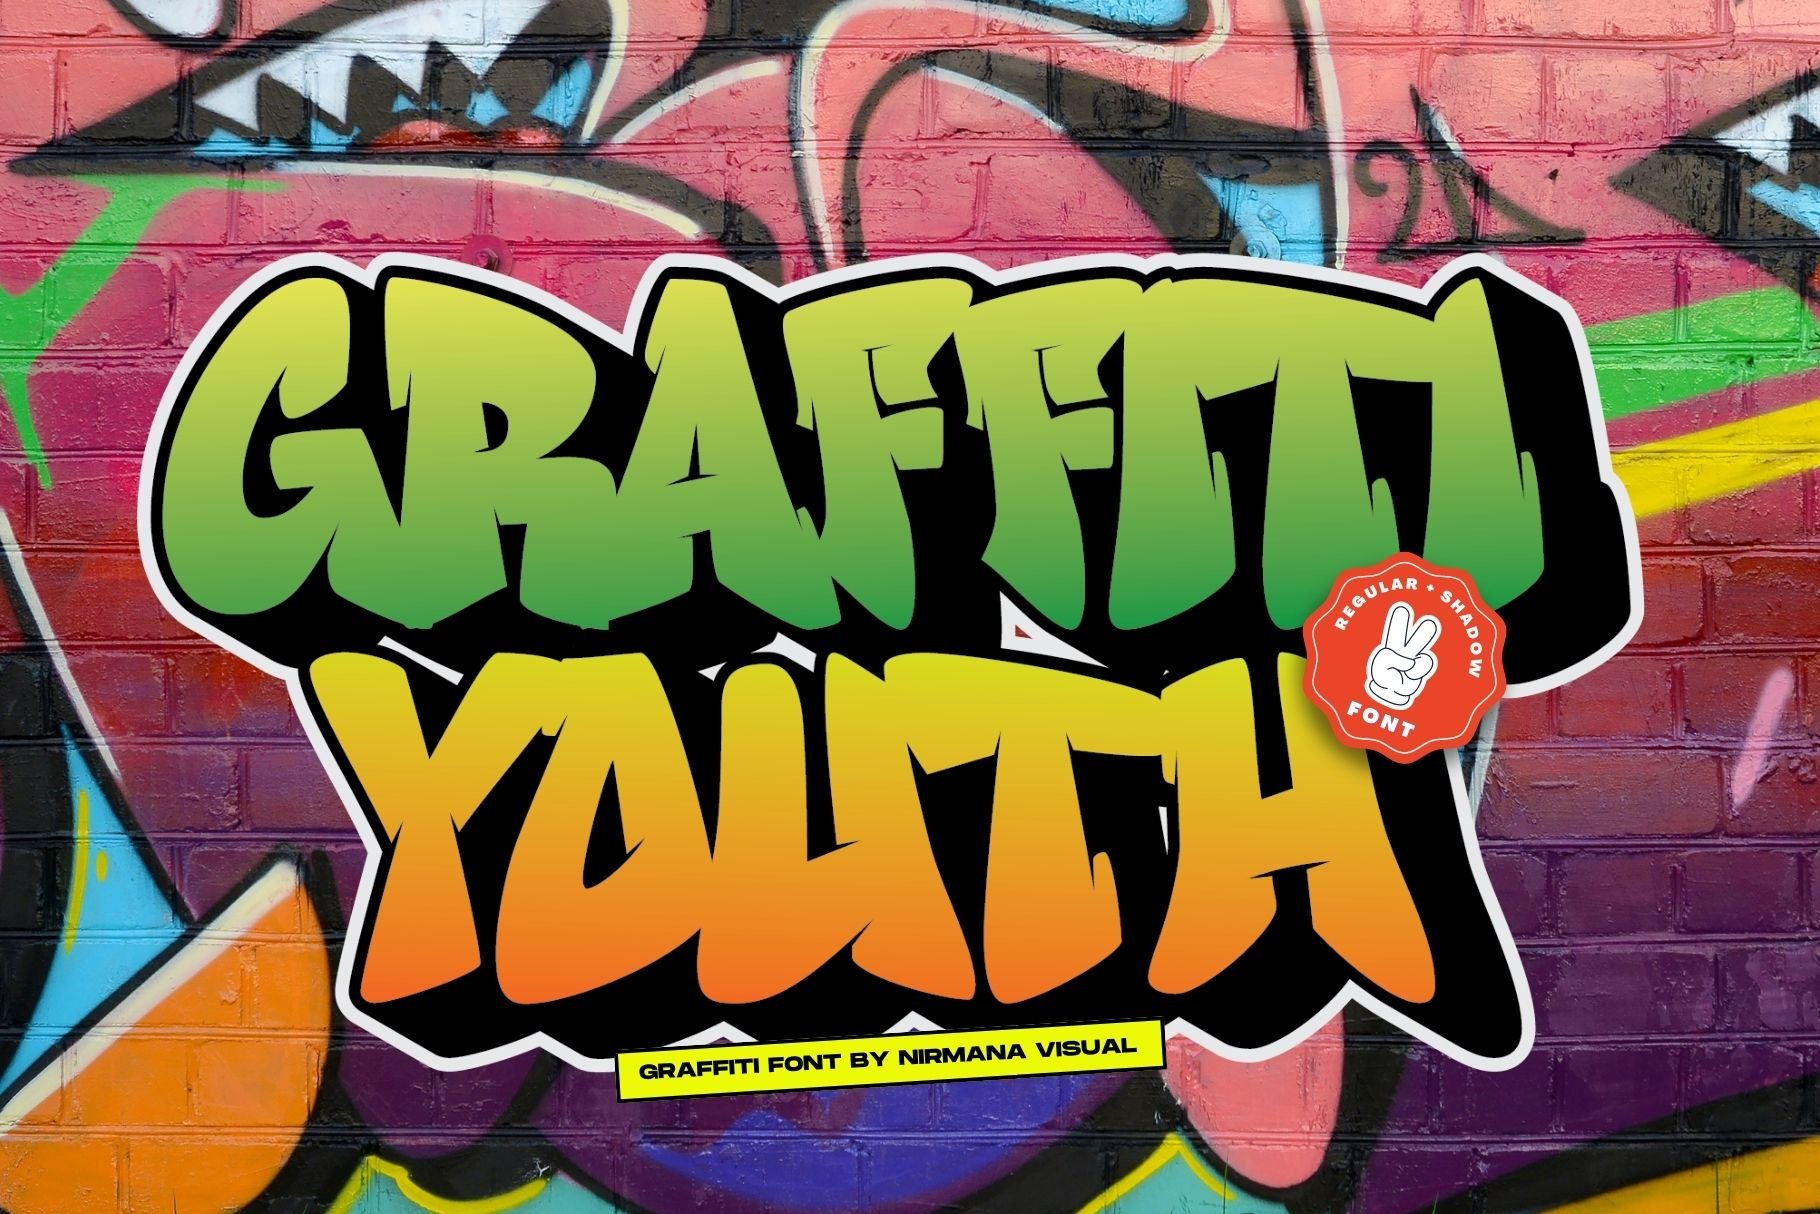 Graffiti Youth - Graffiti Font cover image.